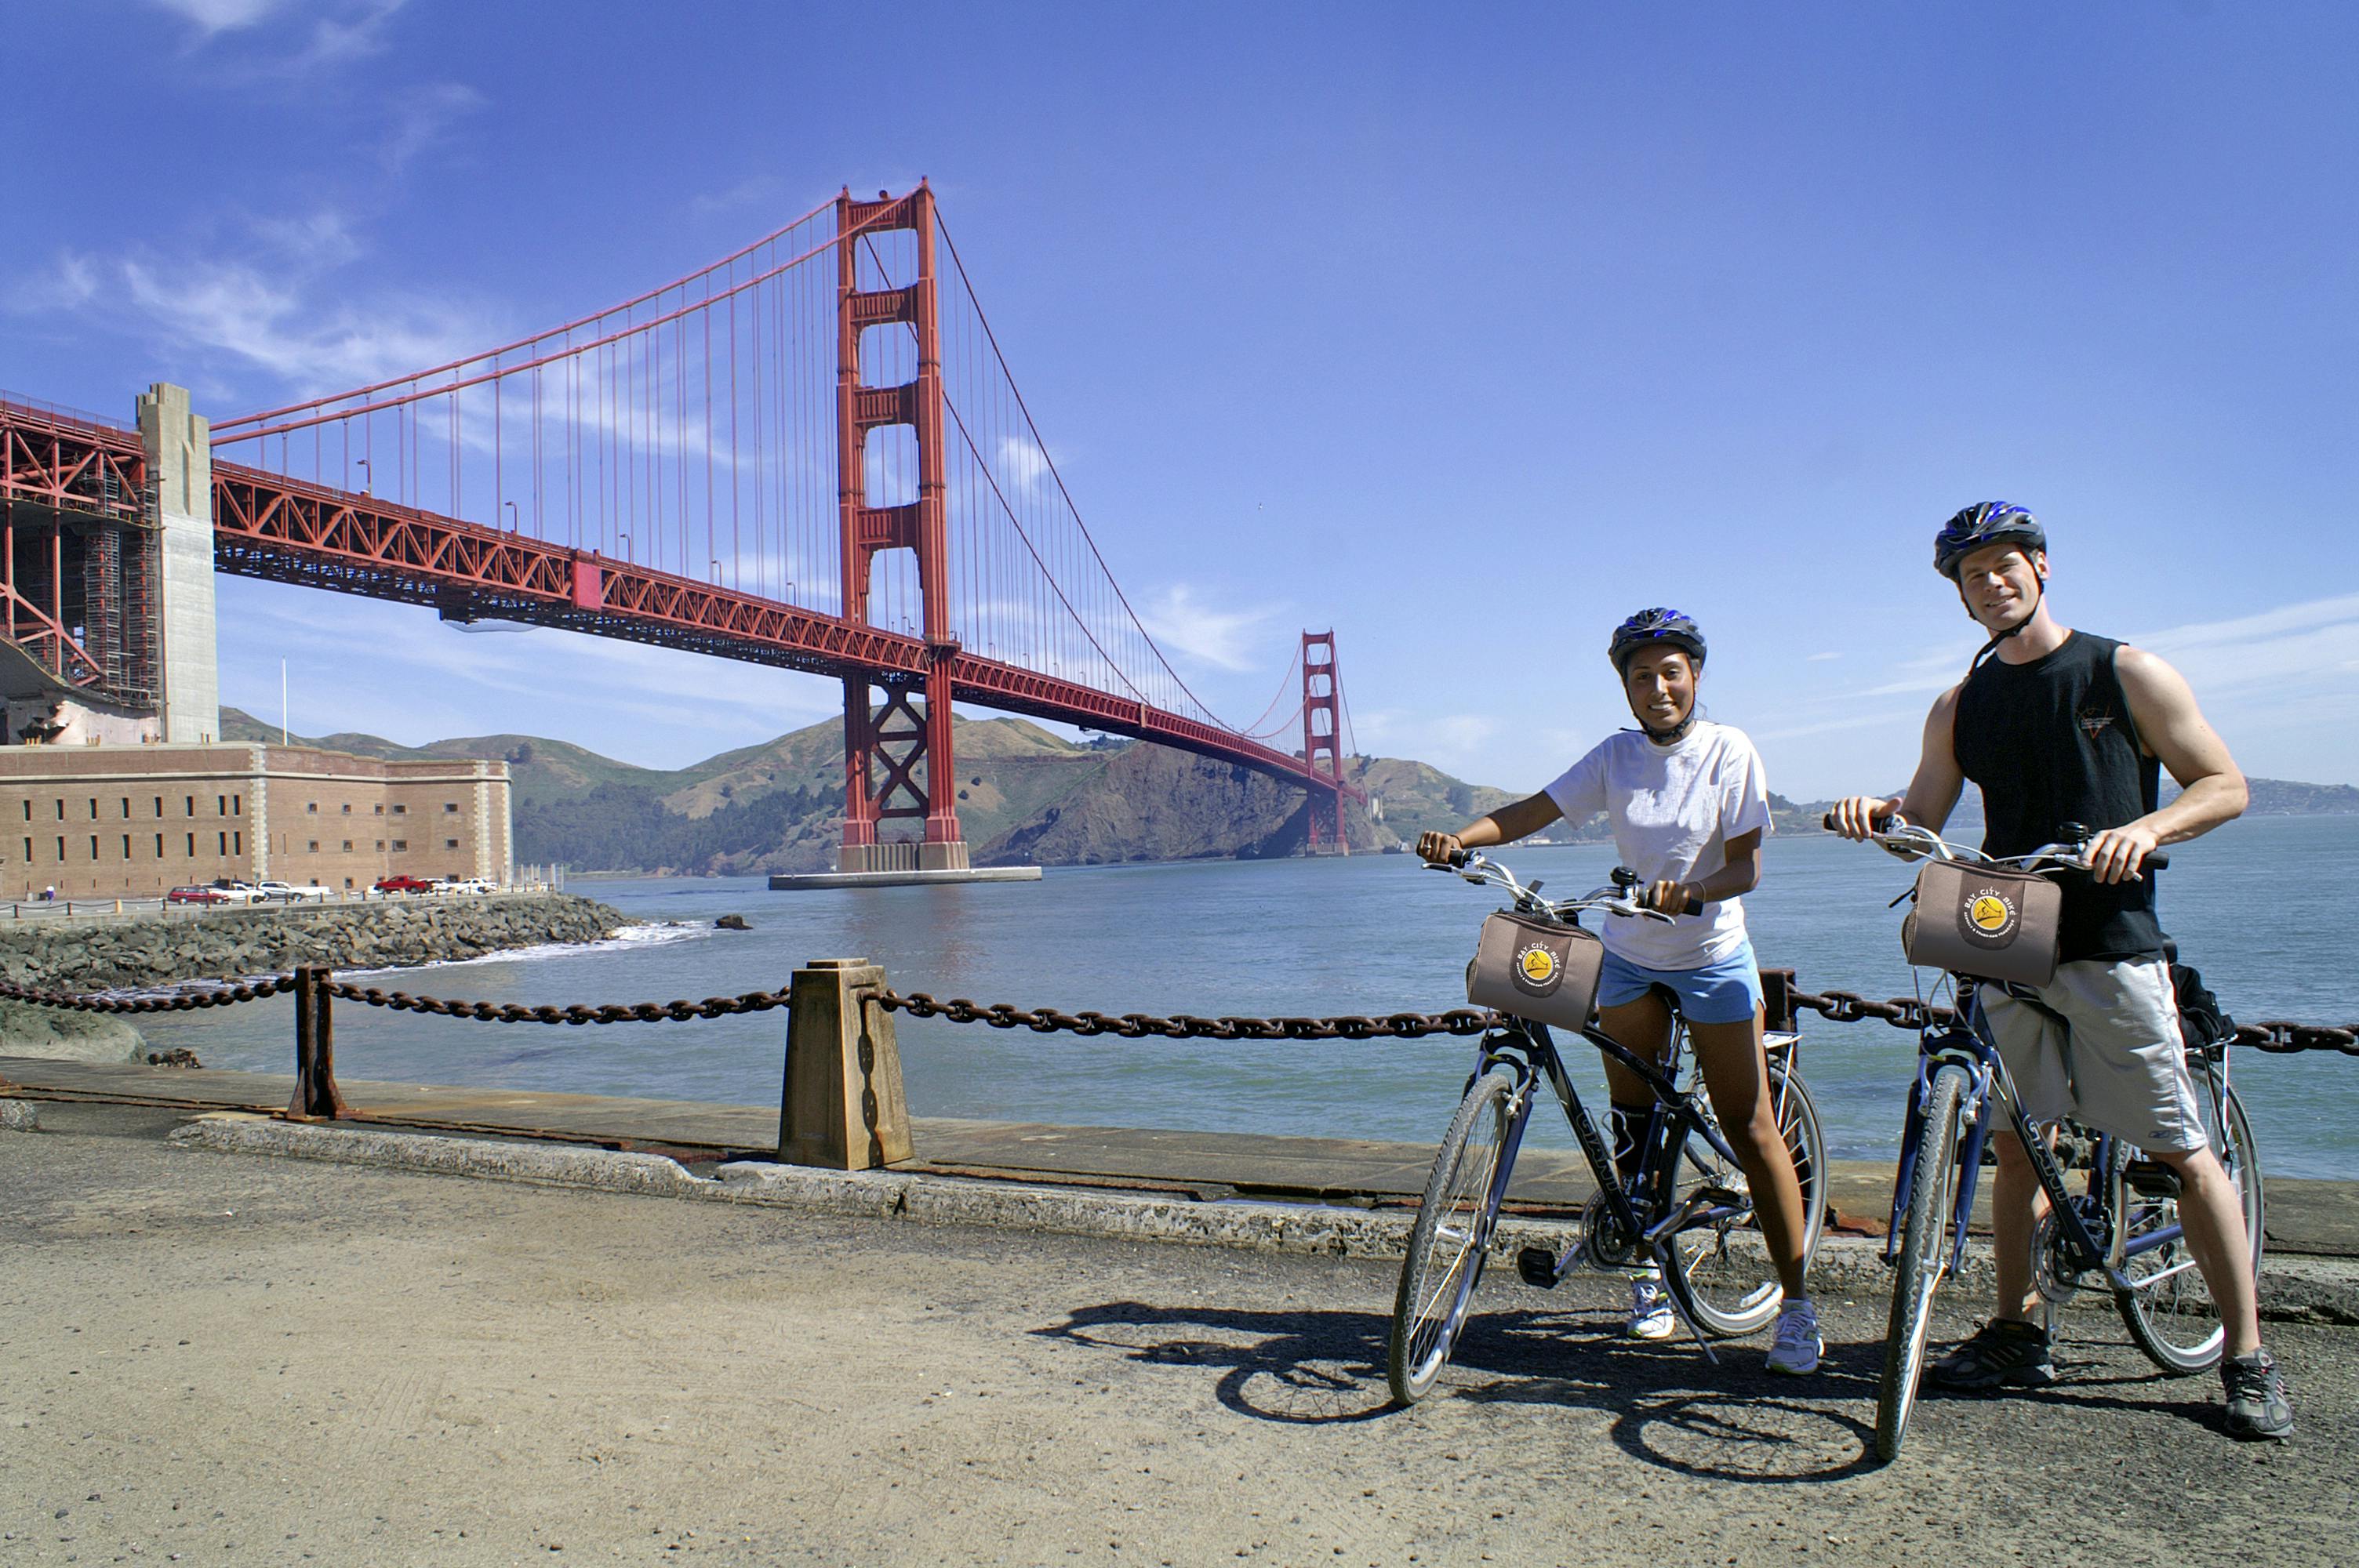 Alquiler de bicicletas y autobuses con paradas libres en San Francisco